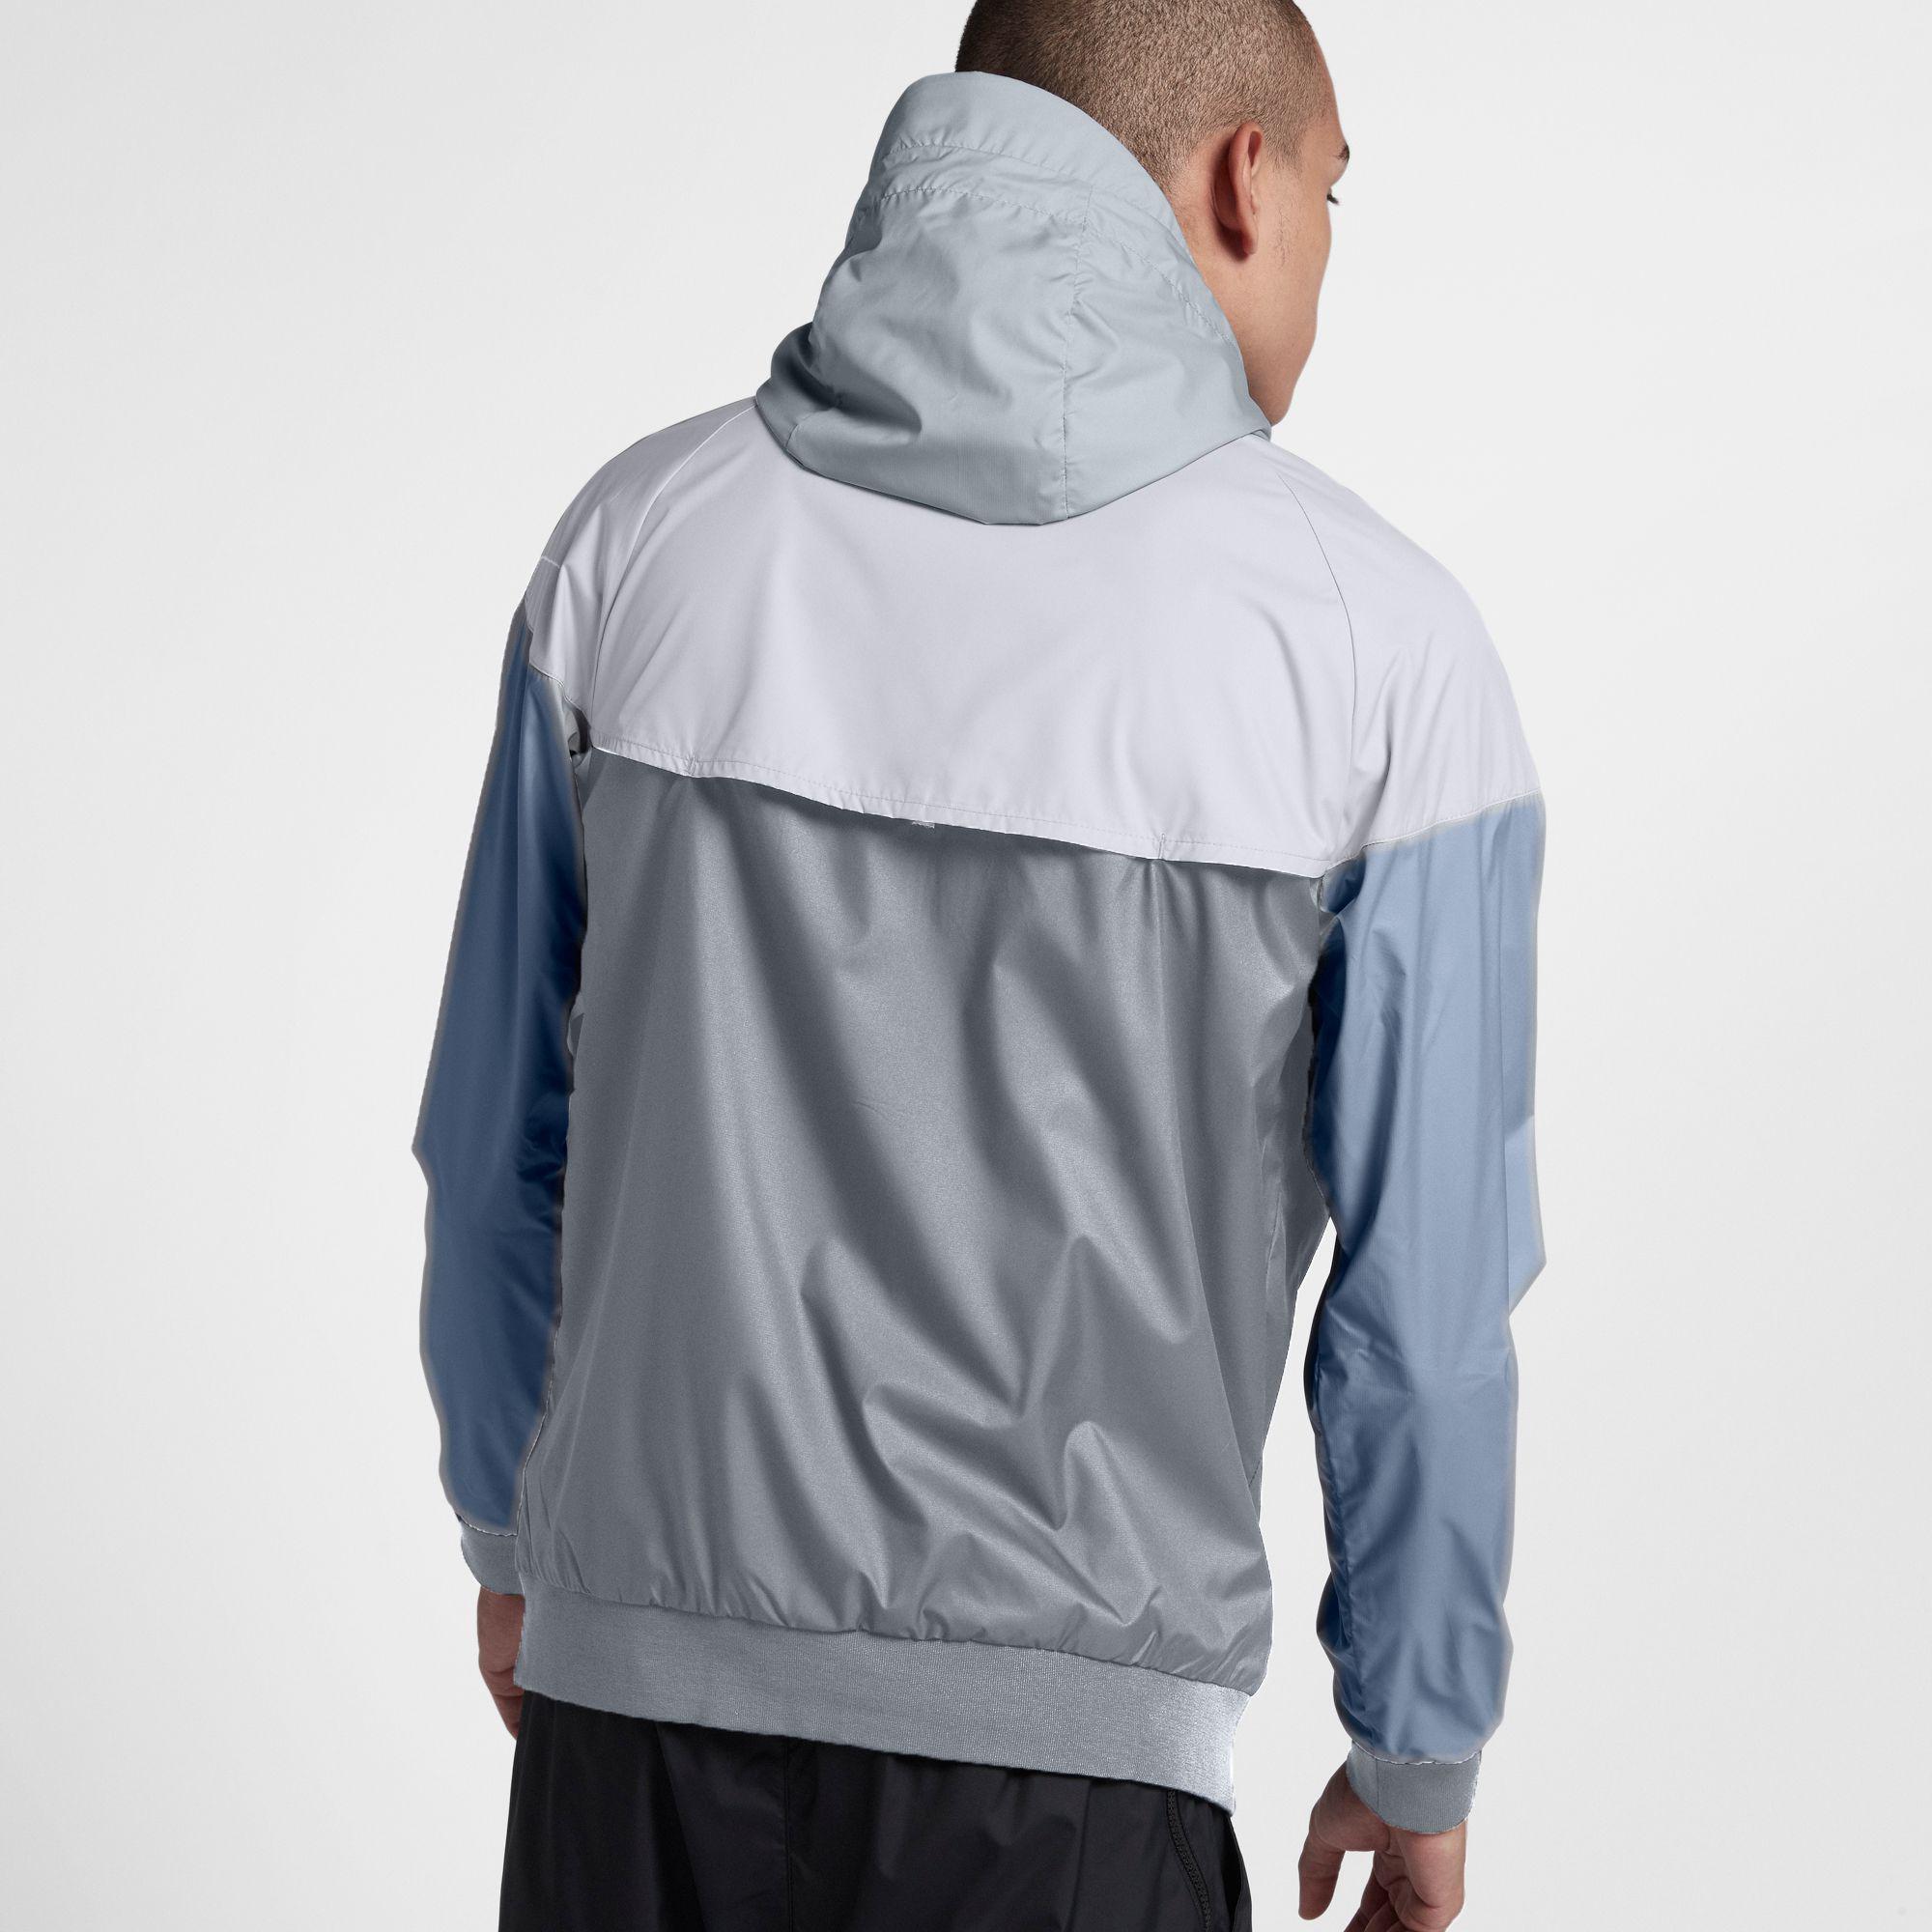 Nike Synthetic Windrunner Full Zip Jacket in White for Men - Lyst